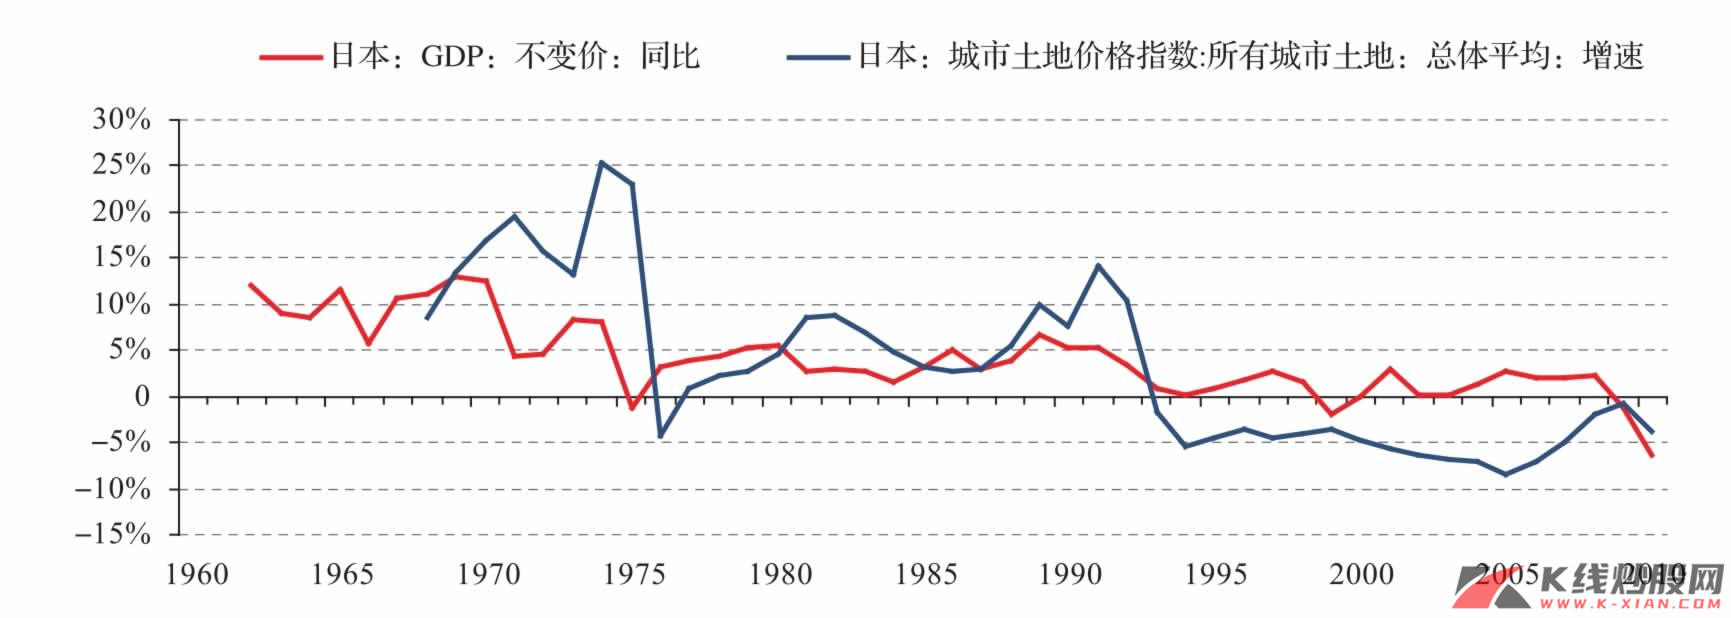 城市土地价格指数与GDP同比增速：日本